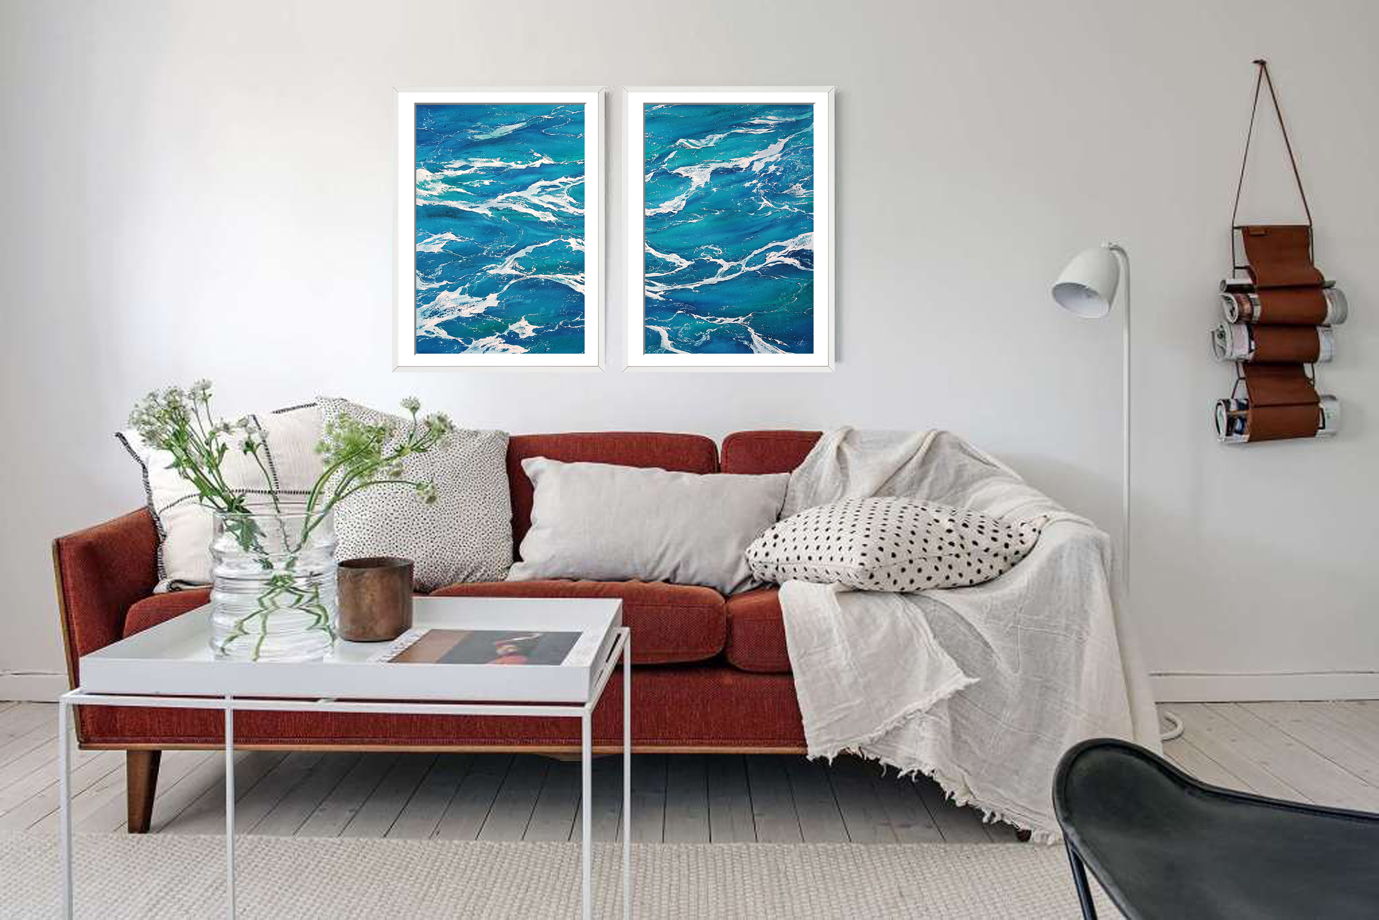 Диптих абстрактной акварельной картины "Морская пена" (74 х 54 см)